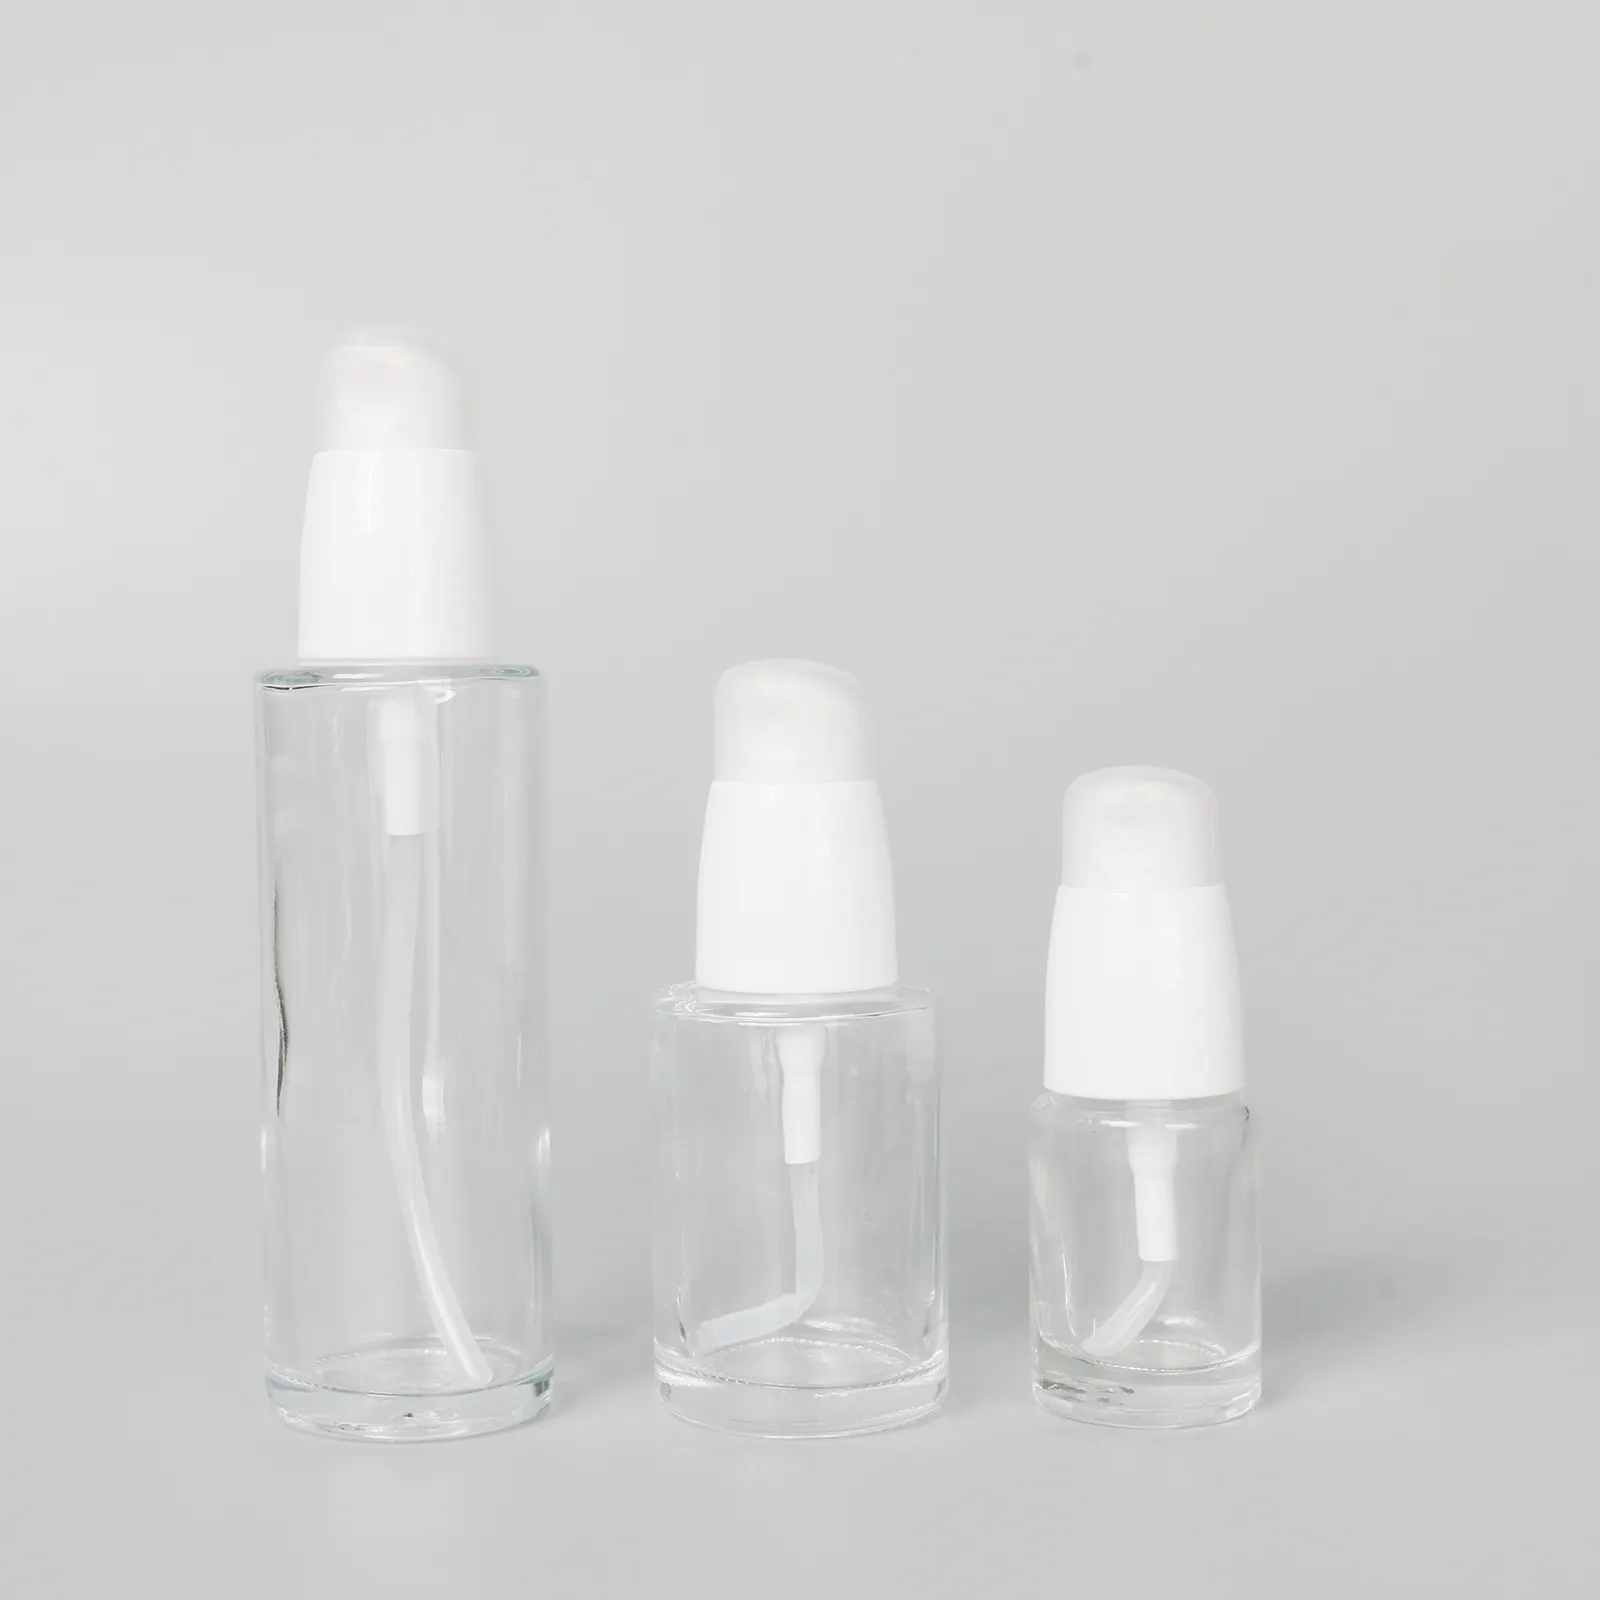 Botella de suero facial transparente, envase redondo de 30ml, ecológico, con bomba